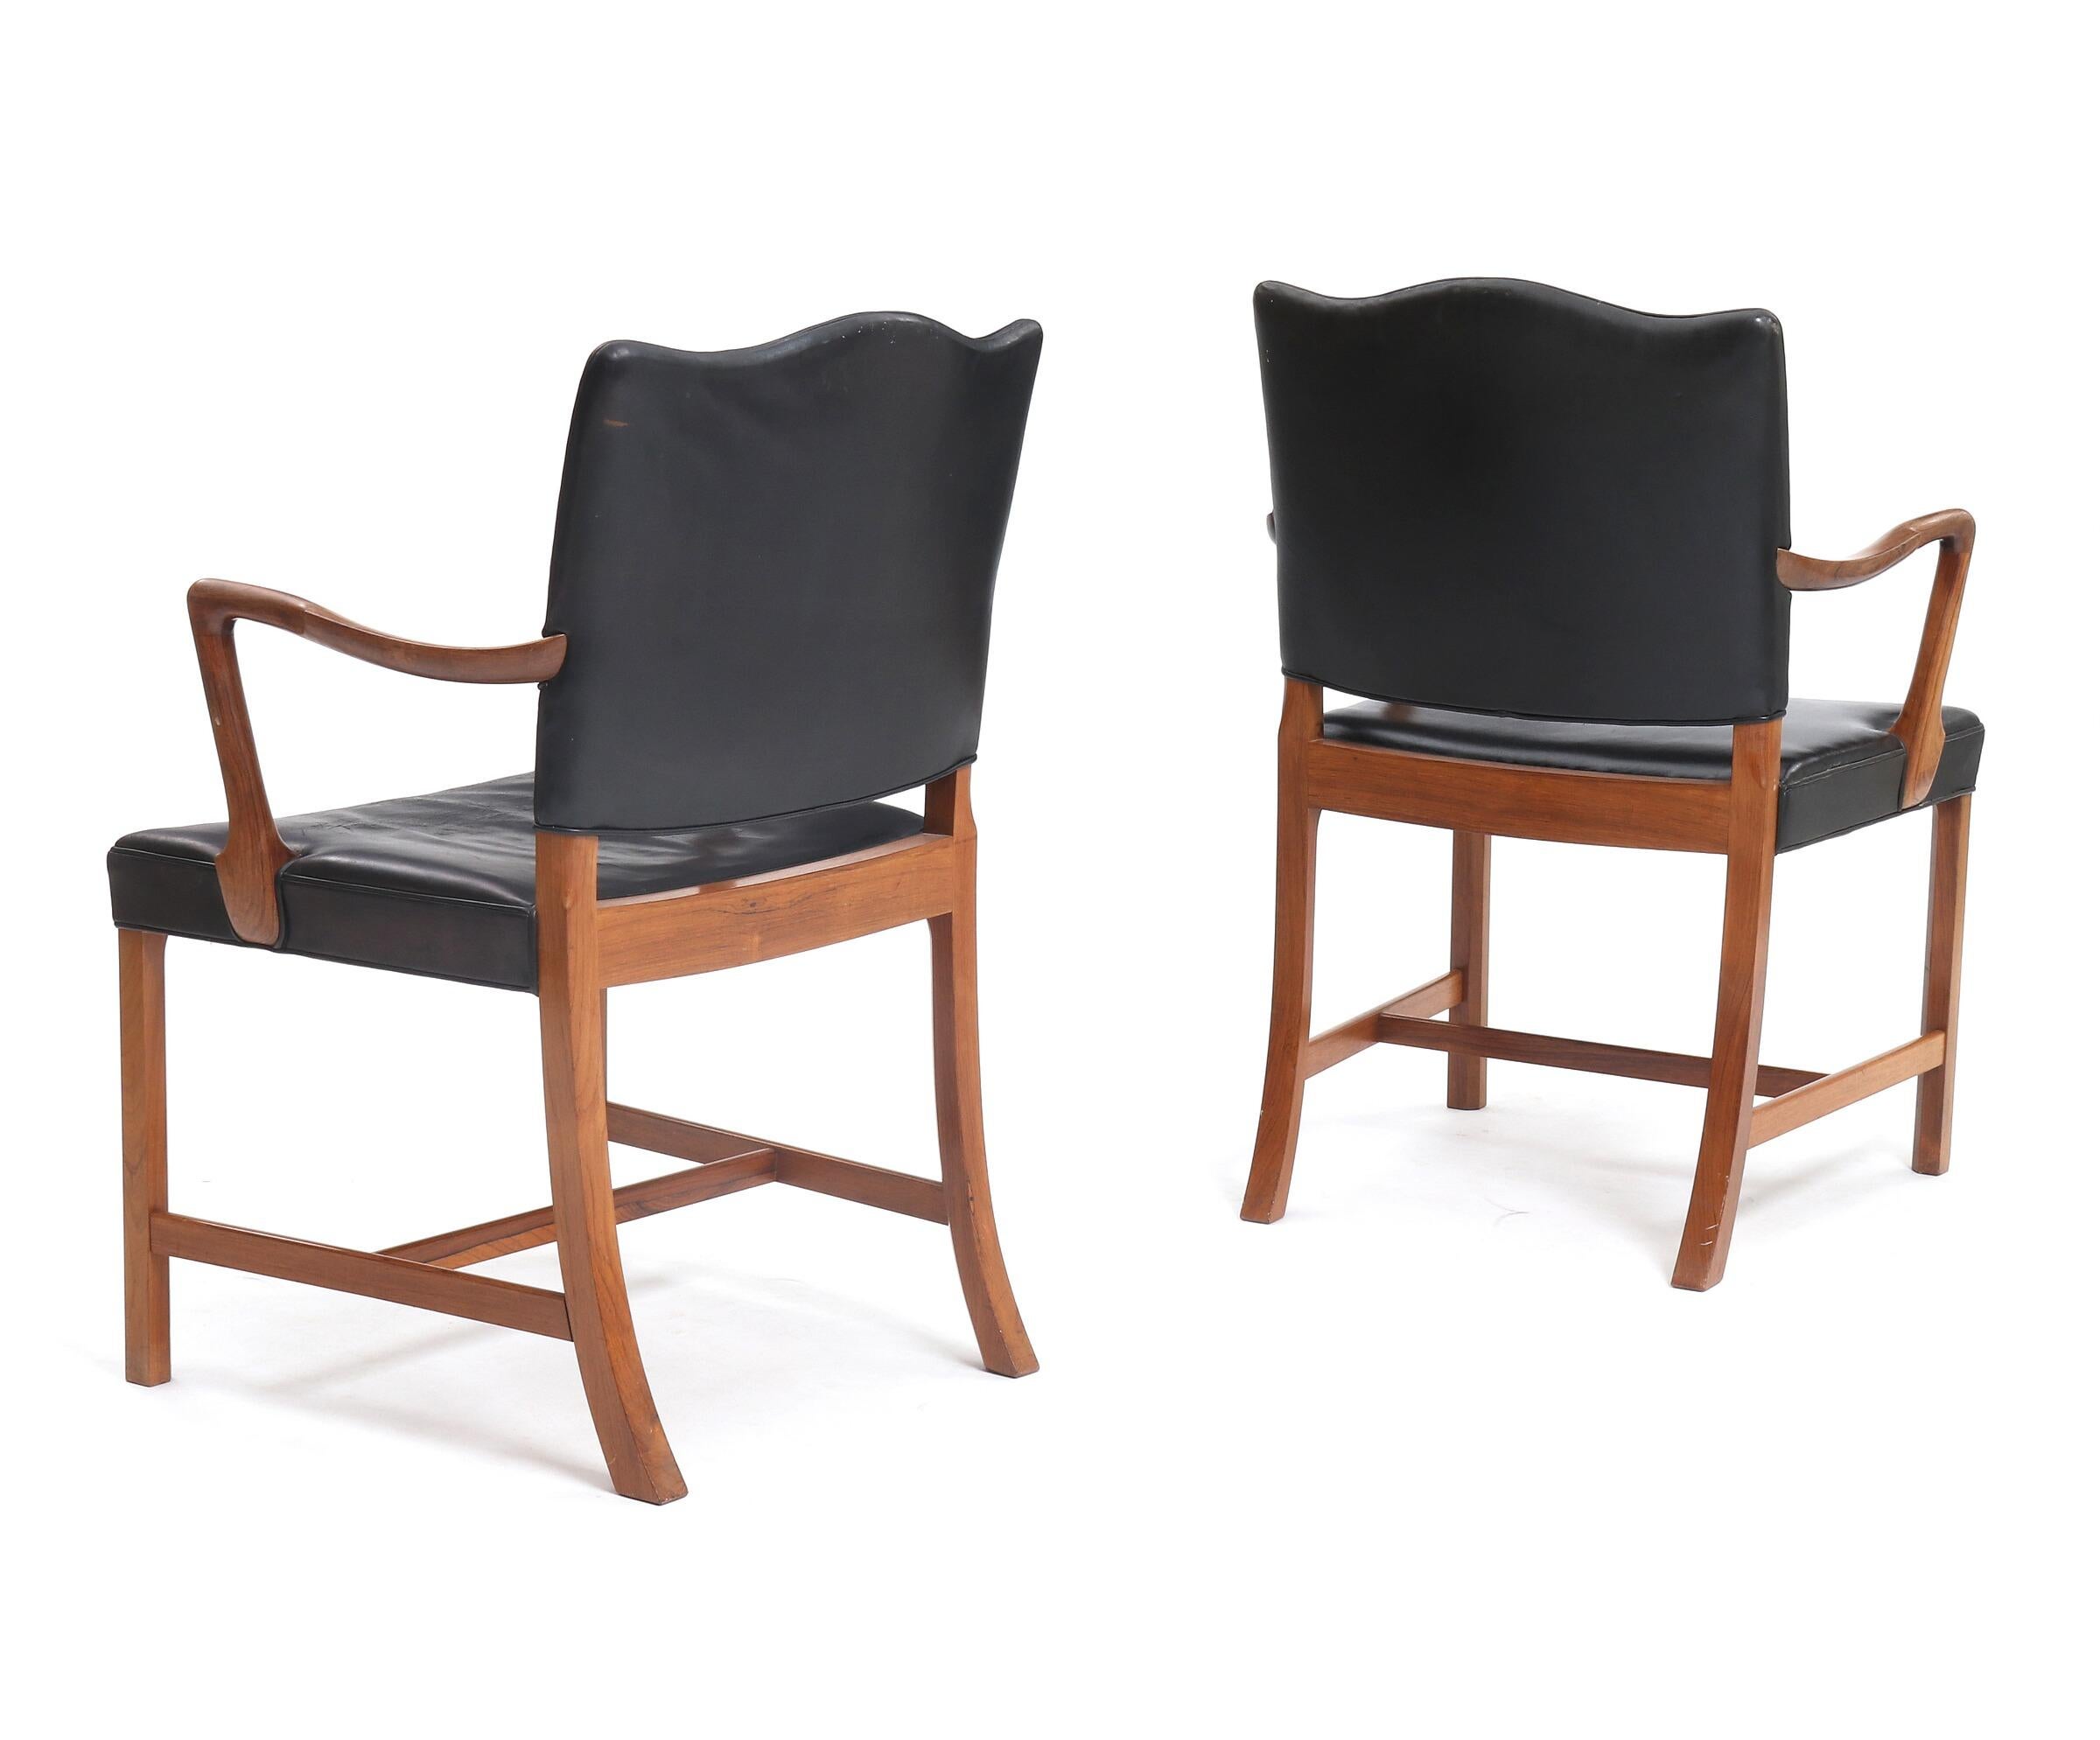 Paire de fauteuils en bois de rose conçus par Ole Wanscher. Fabriqué et marqué d'un label par l'ébéniste A.J. Iversen.

Le cuir de l'assise et du dossier d'une chaise est d'origine. 
Le cuir de l'assise et du dossier d'une chaise a été retapissé